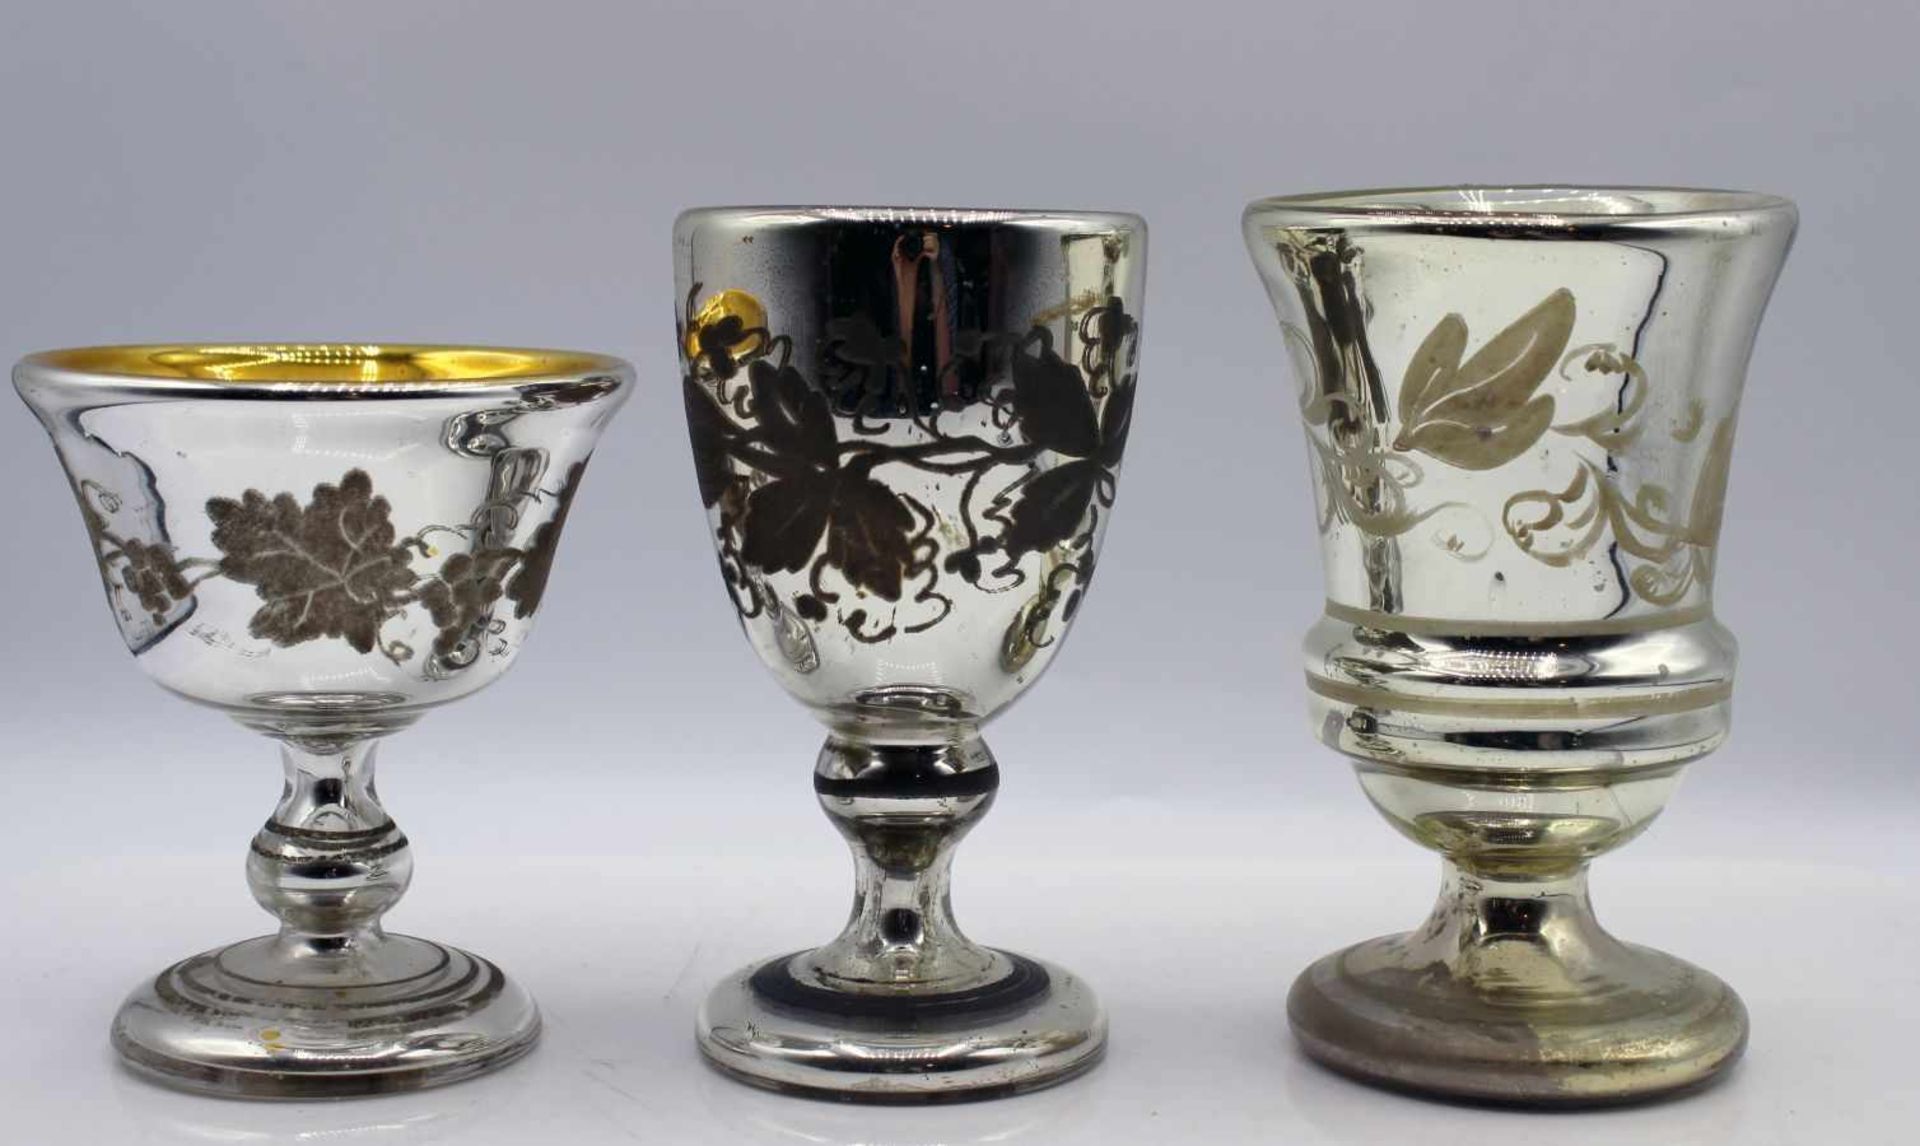 Silberglas - wohl Böhmen 19.Jahrhundert bzw. Bauernsilber, beschichtetes Glas verziert mit